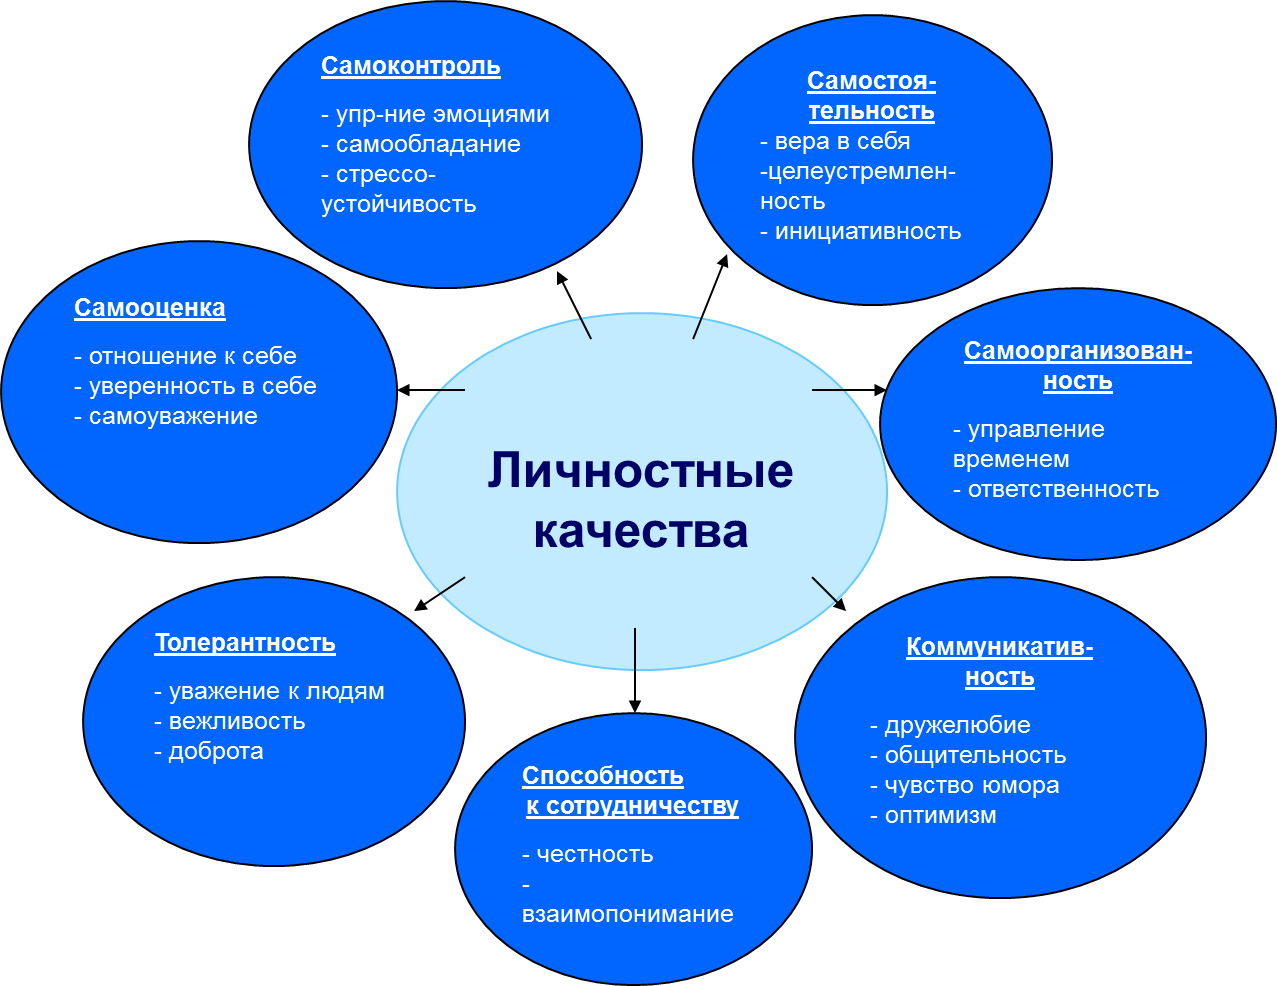 Примеры конфликтных ситуаций, способы и пути их разрешения и урегулирования | mma-spb.ru